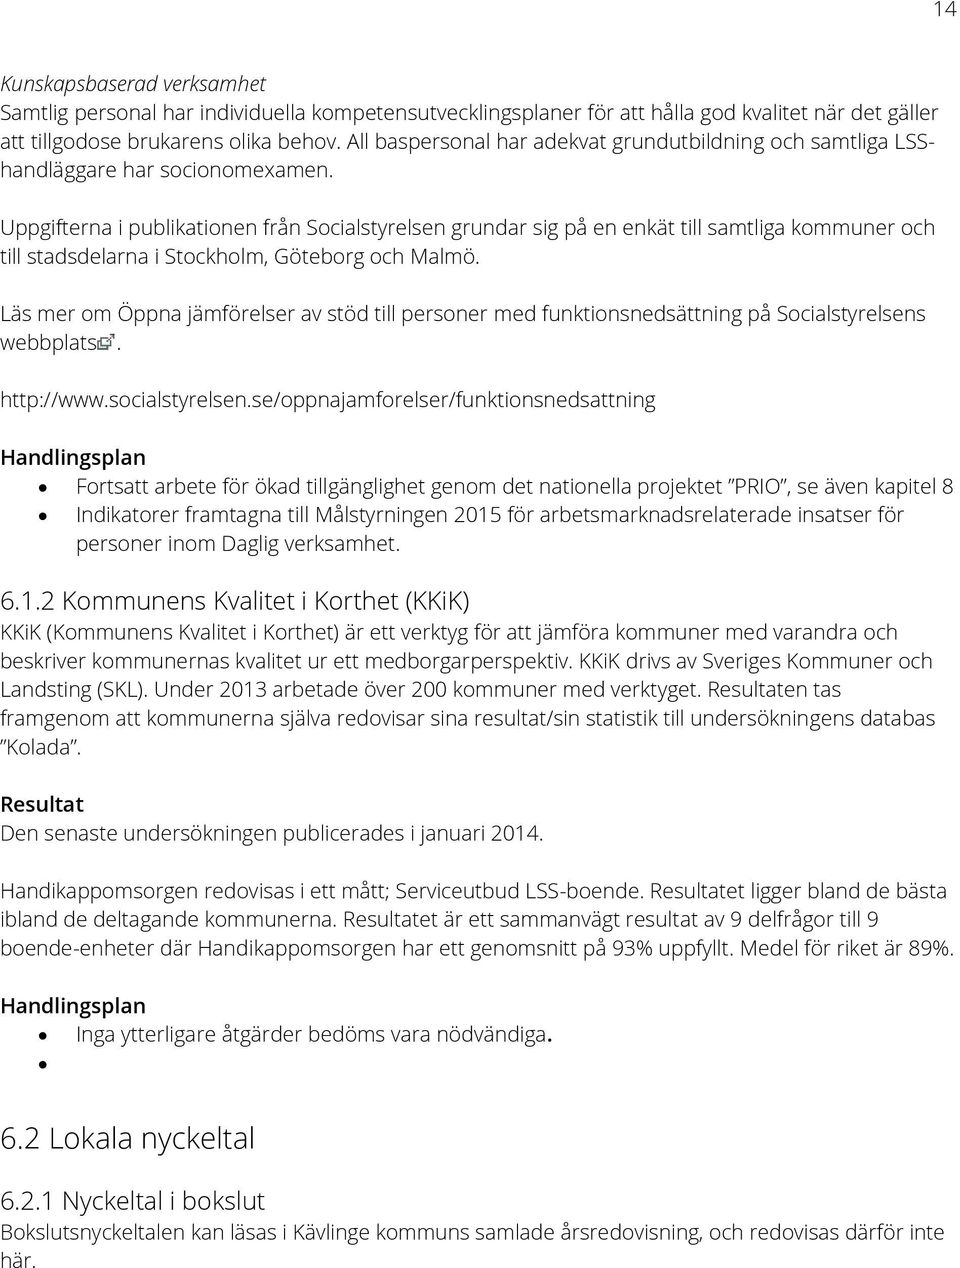 Uppgifterna i publikationen från Socialstyrelsen grundar sig på en enkät till samtliga kommuner och till stadsdelarna i Stockholm, Göteborg och Malmö.